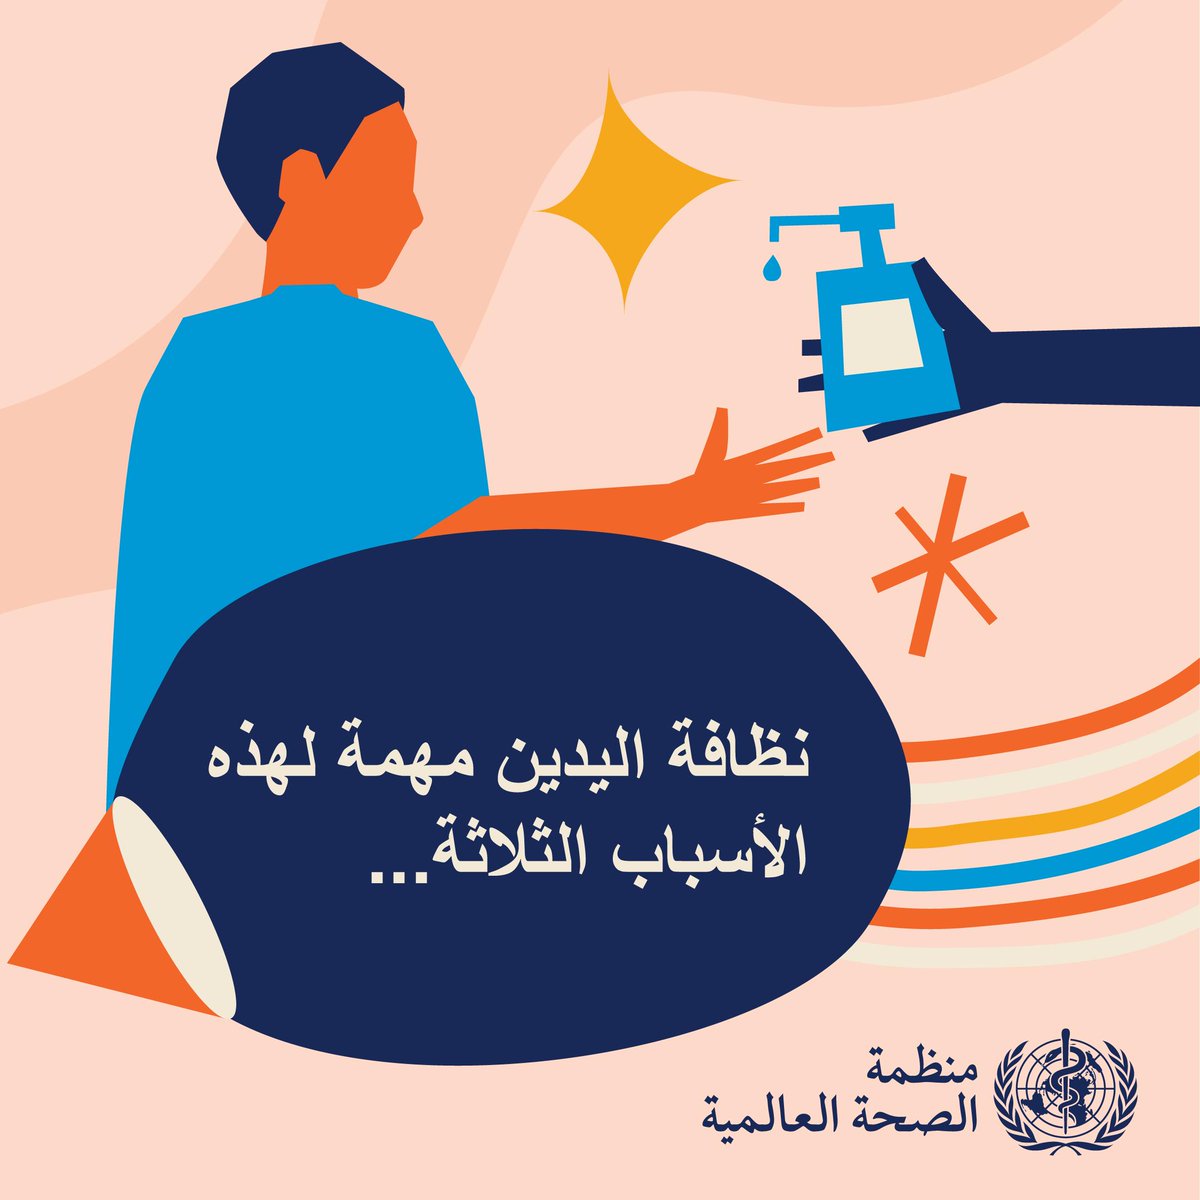 #الأيدي_النظيفة تنقذ الأرواح.
 
 #نظافة_الأيدي جيدًا هي أحد التدابير الأكثر فعالية للمساعدة في الوقاية من مقاومة مضادات الميكروبات والعدوى المرتبطة بالرعاية الصحية.